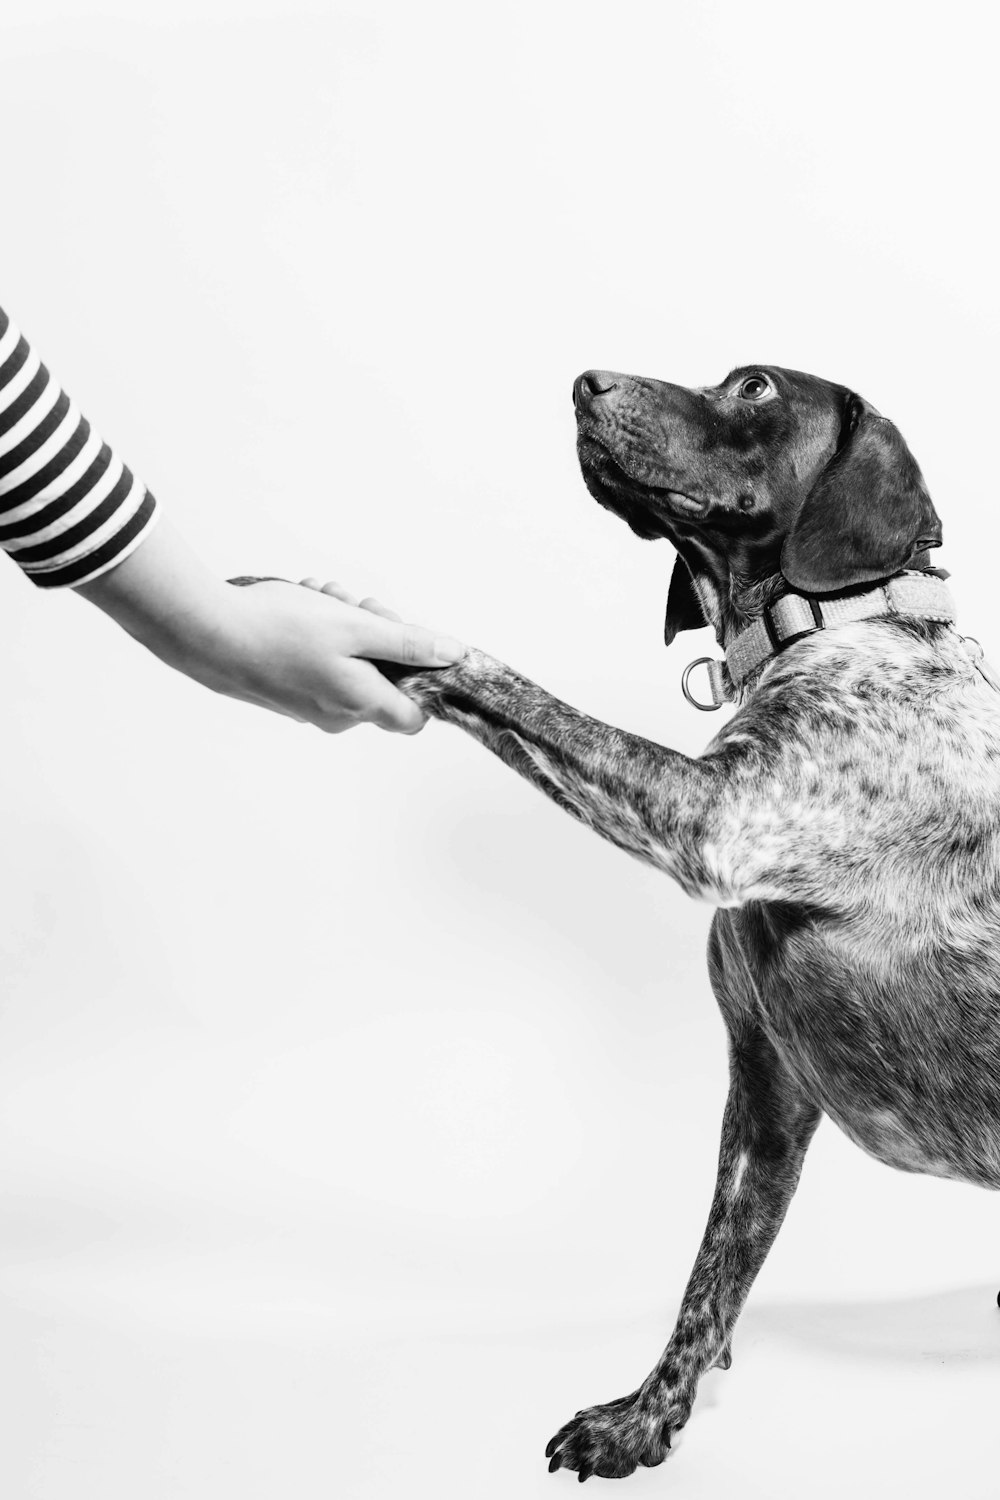 Foto in scala di grigi di persona e cane che si tengono per mano